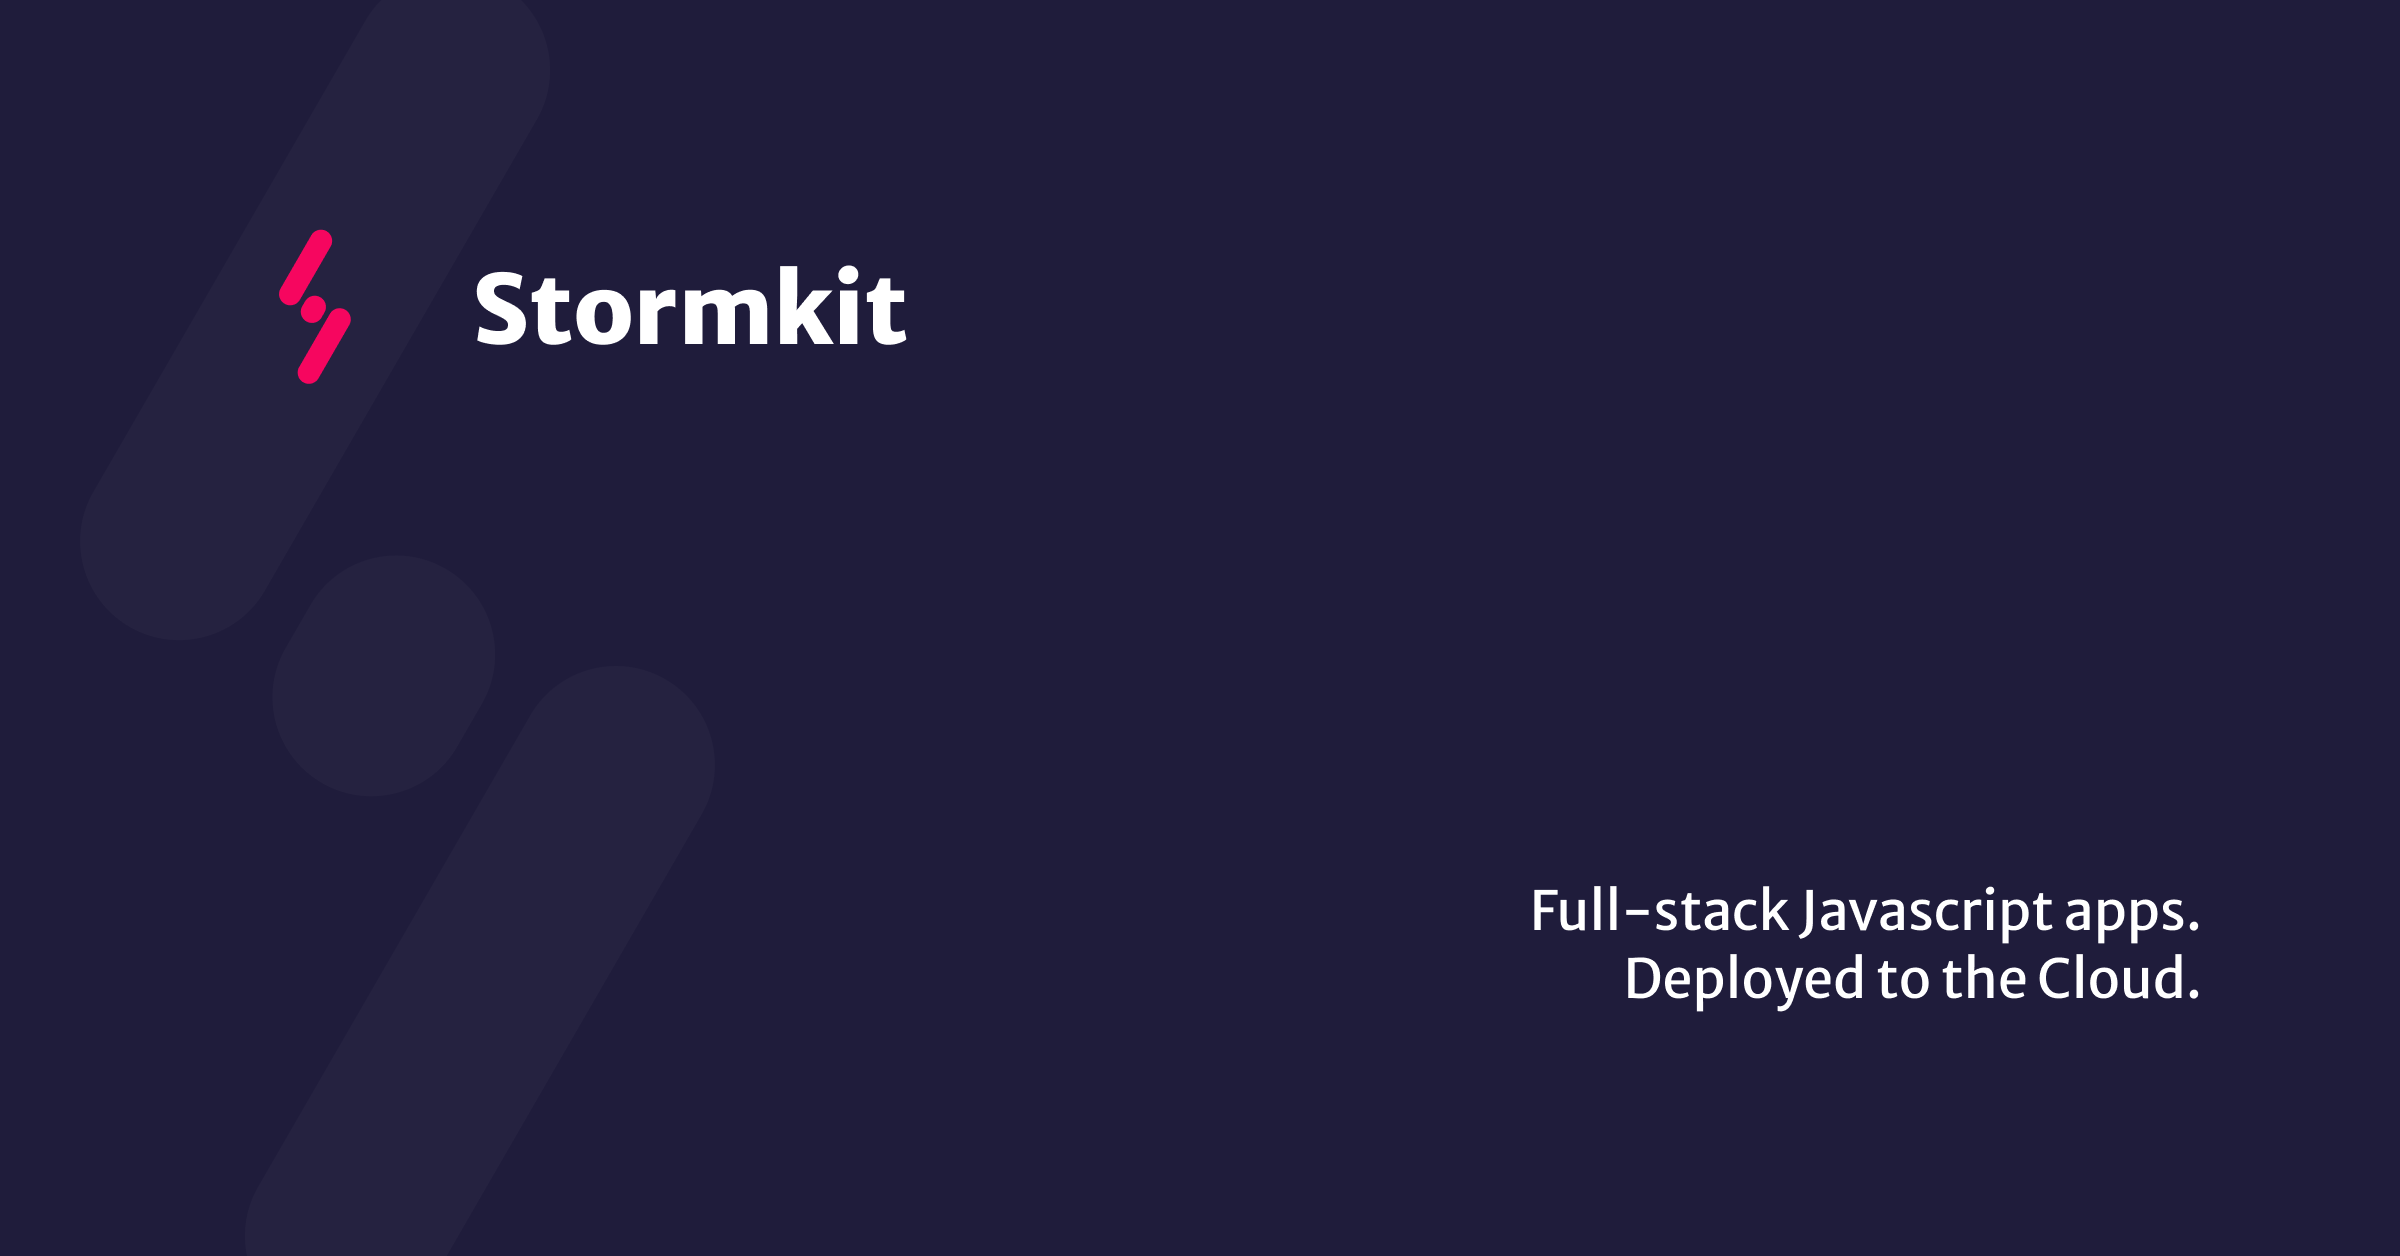 Thumbnail of Stormkit | Effortlessly deploy serverless full stack JavaScript applications